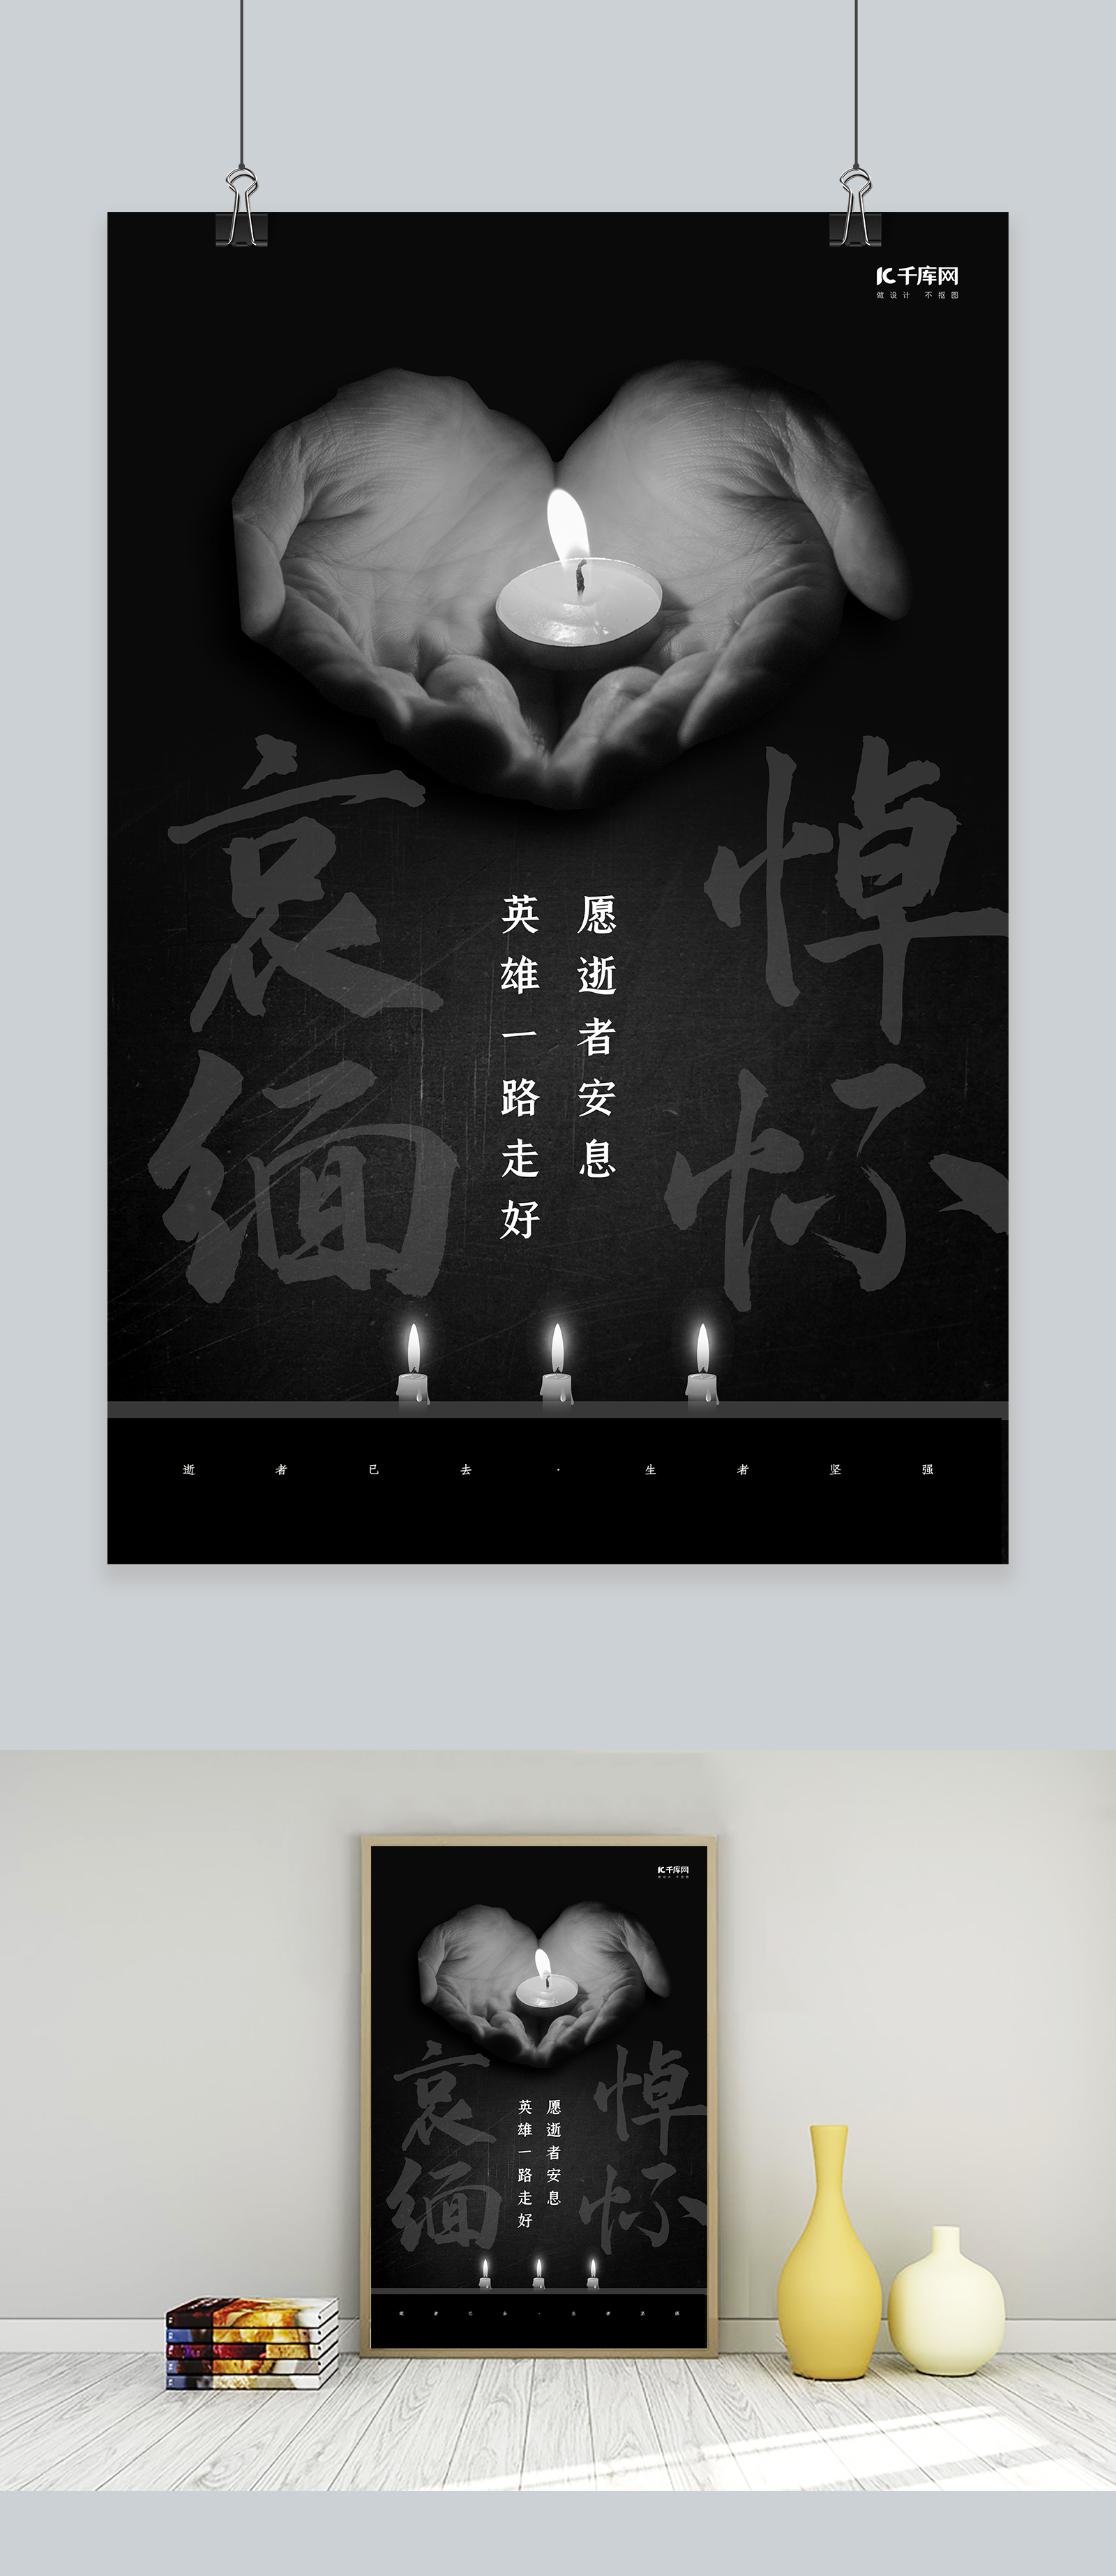 中国老年节敬爱老人关注老人海报_图片模板素材-稿定设计